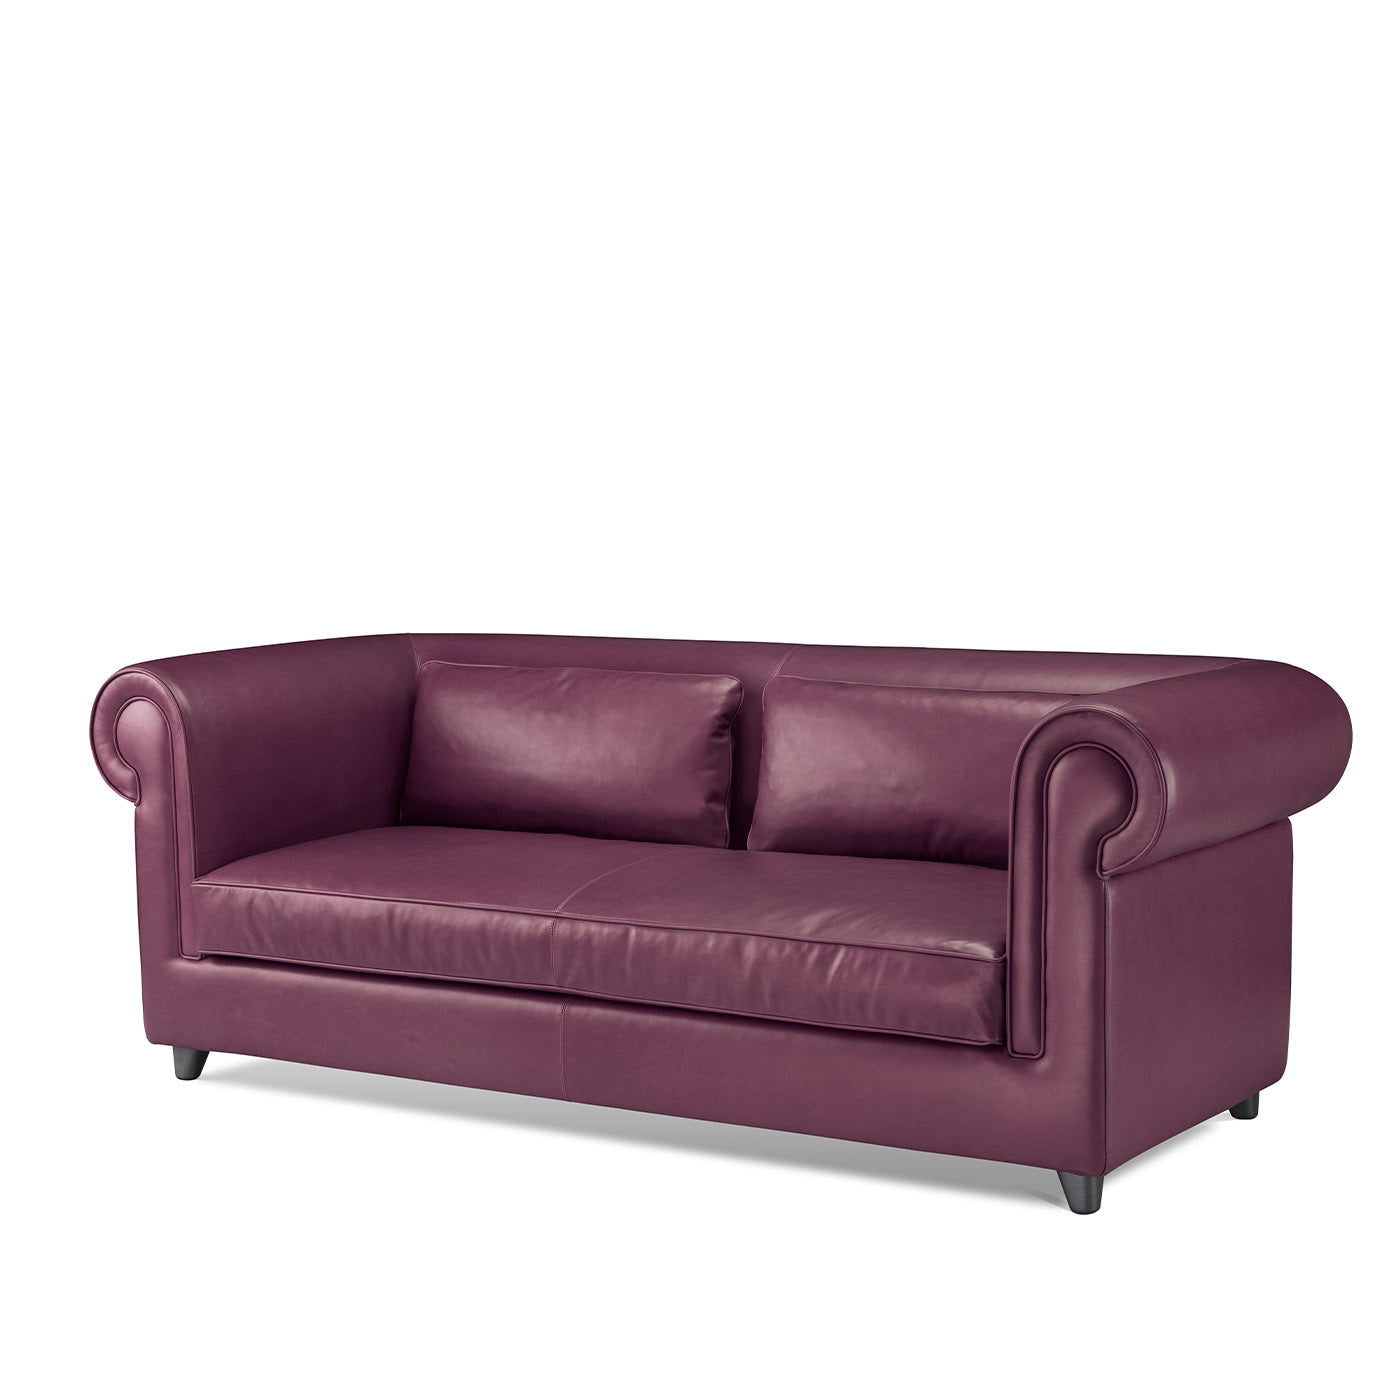 Portofino 2-Seater Purple Sofa by Stefano Giovannoni - Alternative view 2